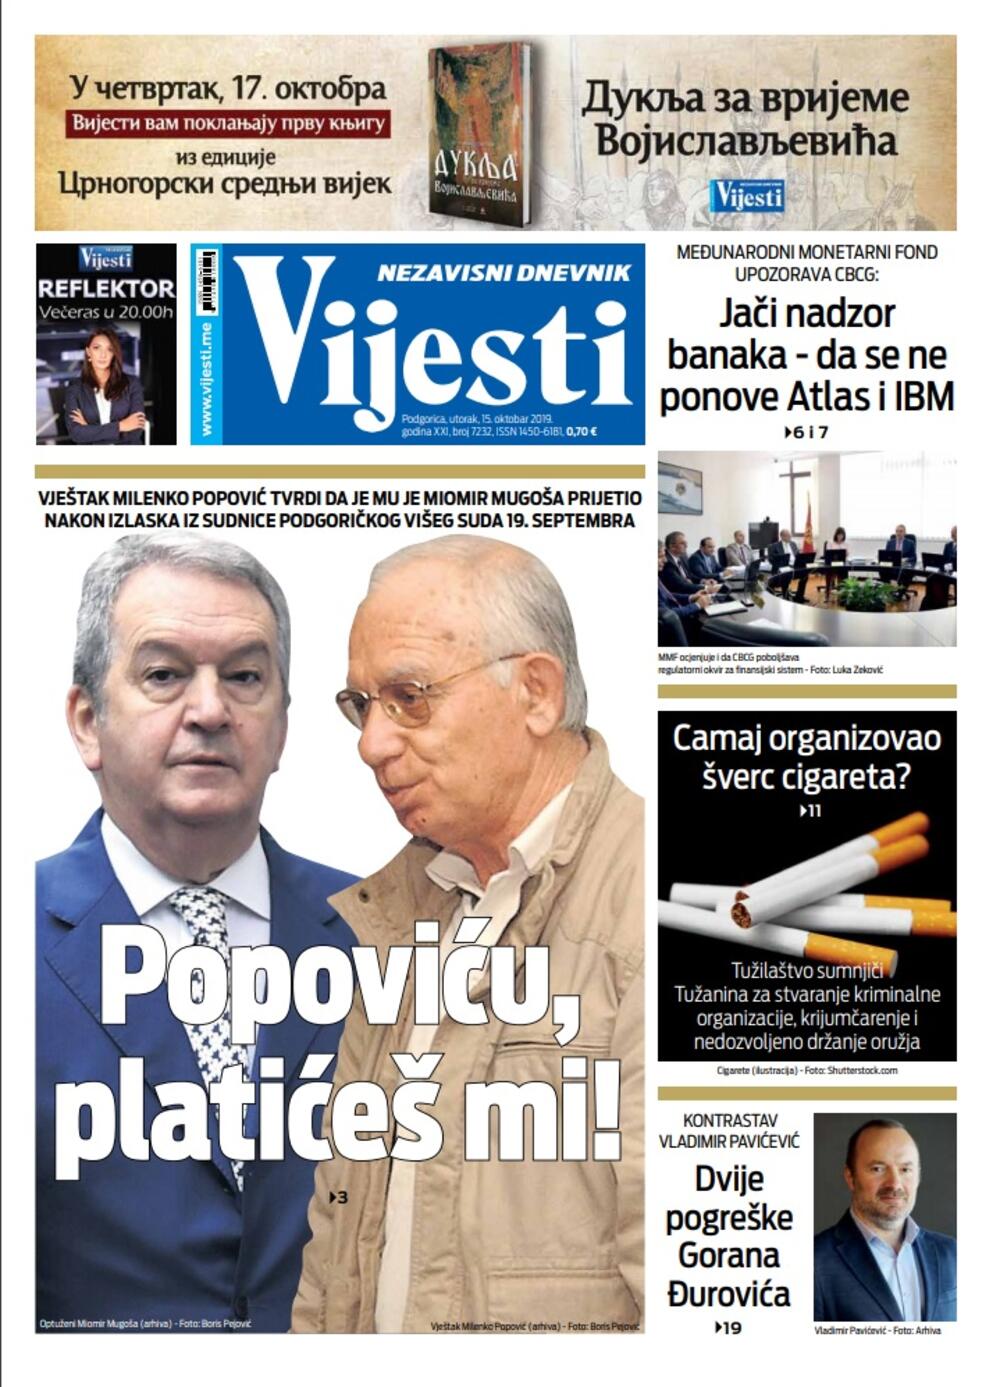 Naslovna strana "Vijesti" za 15. oktobar 2019.